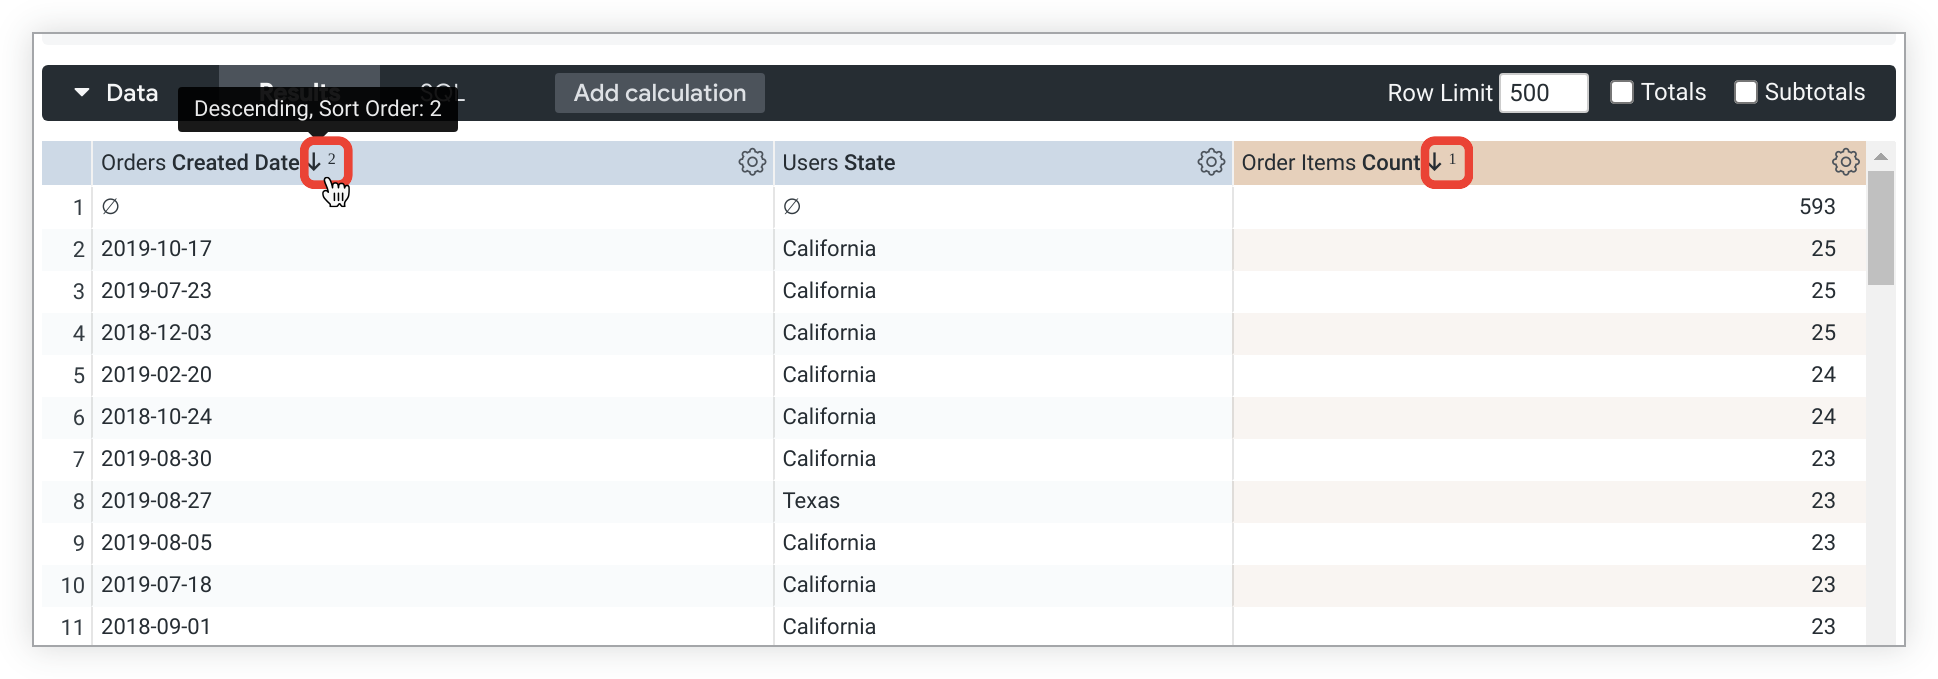 注文作成日、ユーザーの州、および注文数の降順と注文作成日の降順で並べ替えられた注文数のフィールドを使用して、クエリを検索します。